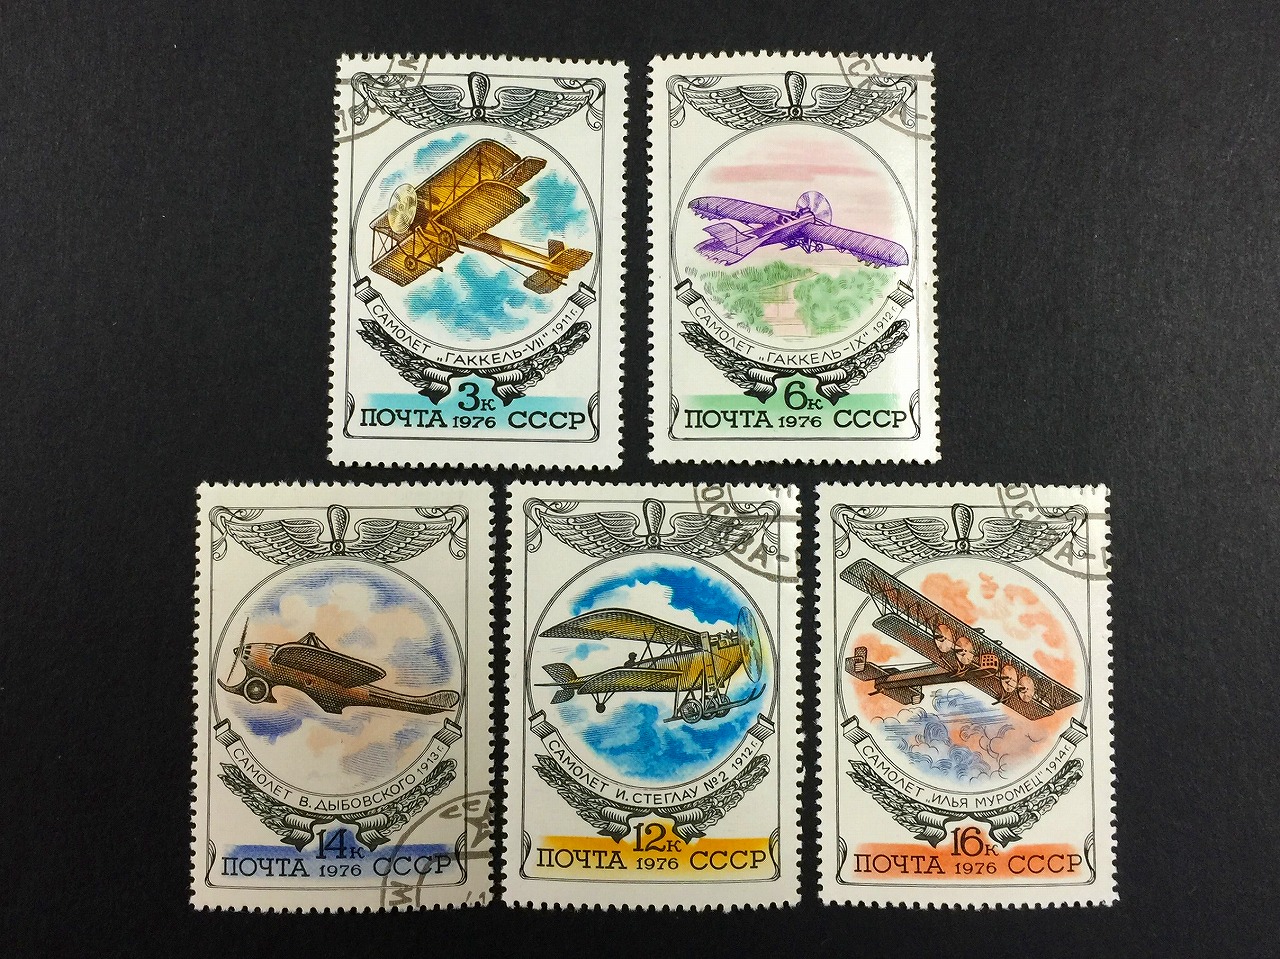 ソ連切手 飛行機の切手 ソビエト5種セット